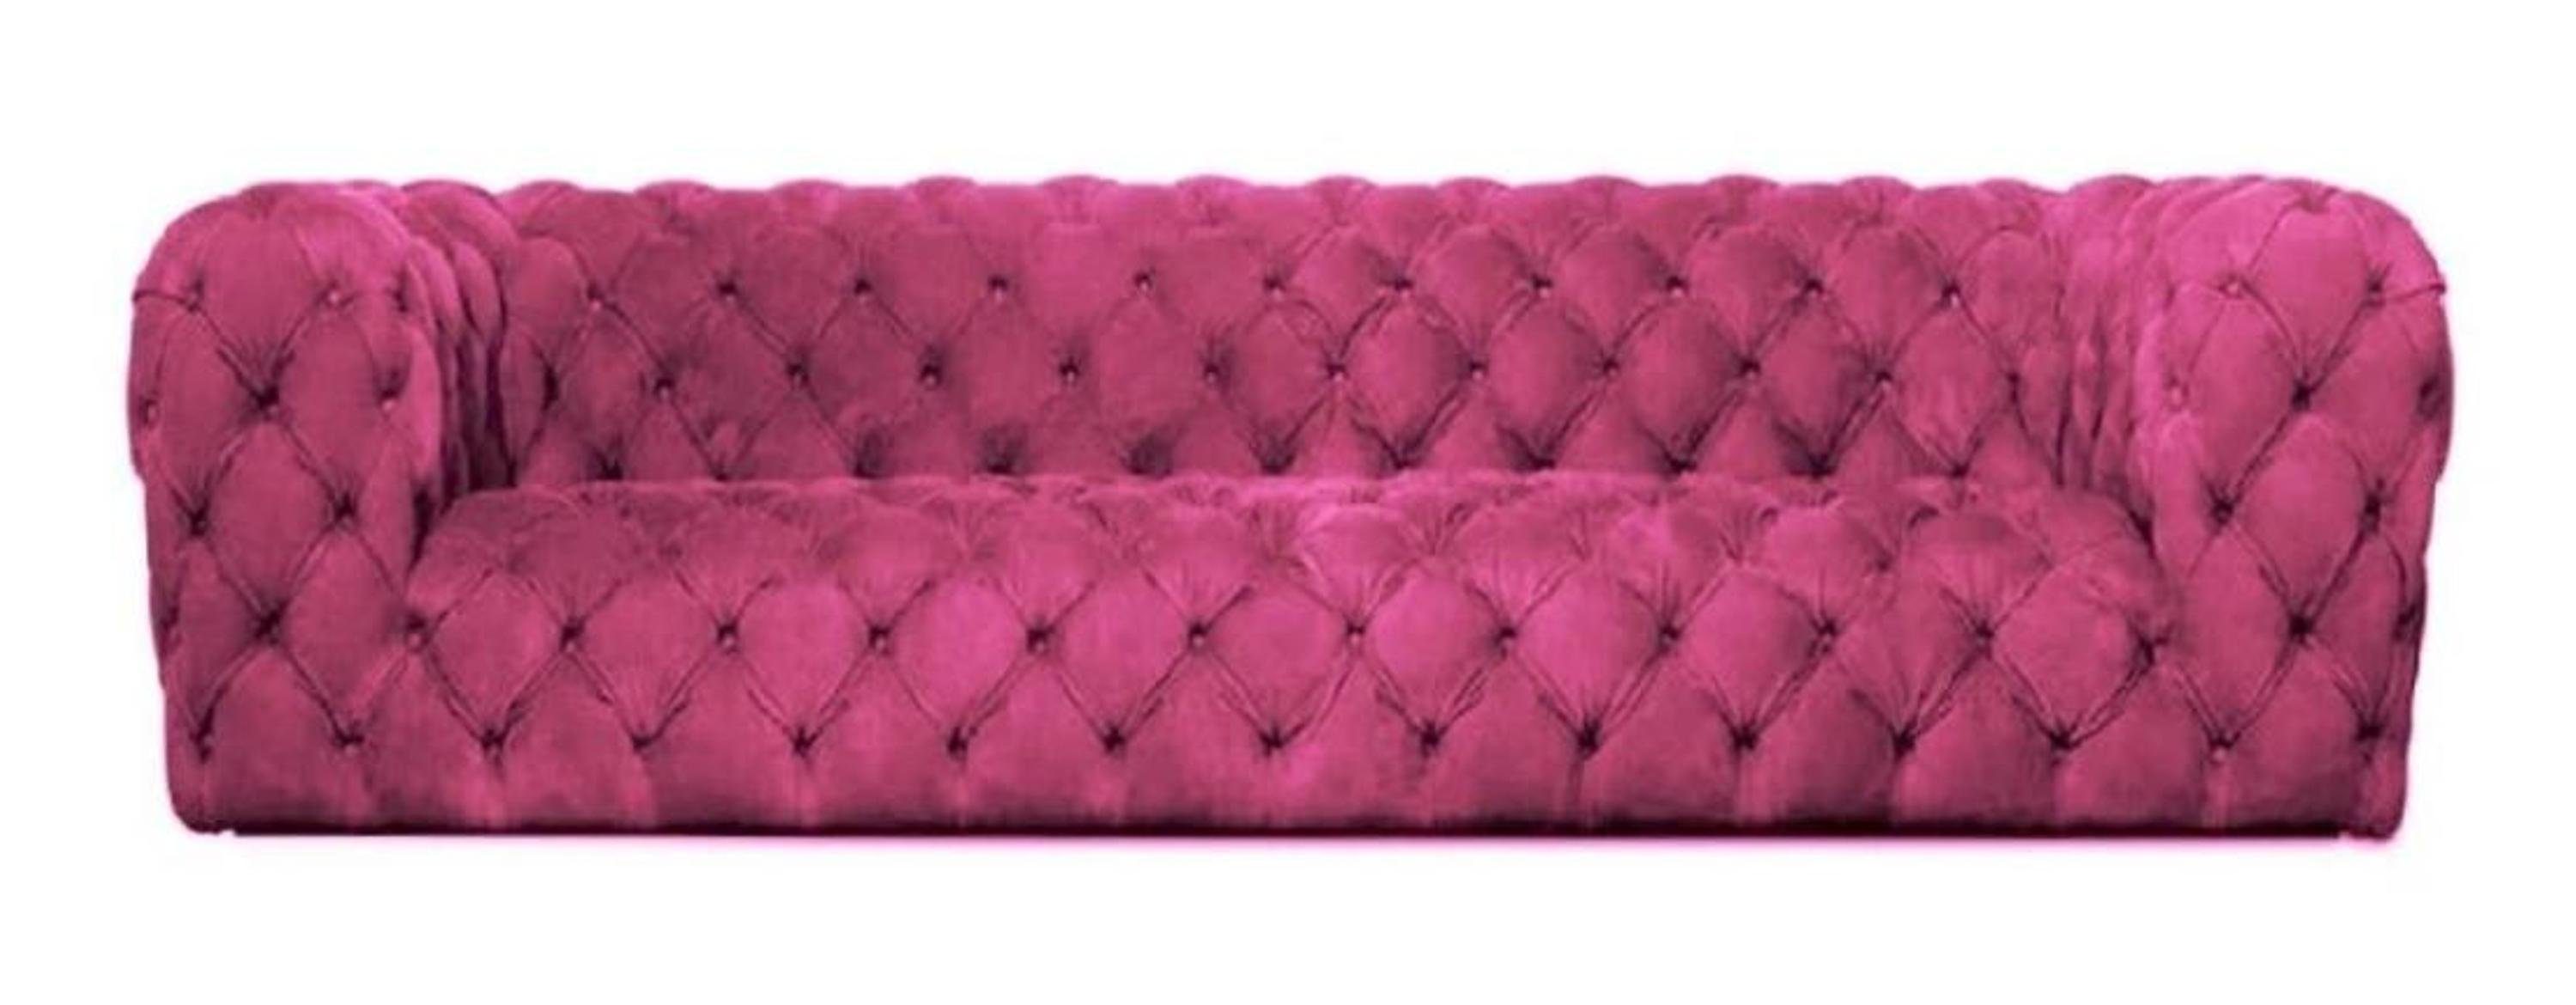 JVmoebel Chesterfield-Sofa, Gelbe Chesterfield Couch Viersitzer xxl big sofa gemütliche Rosa